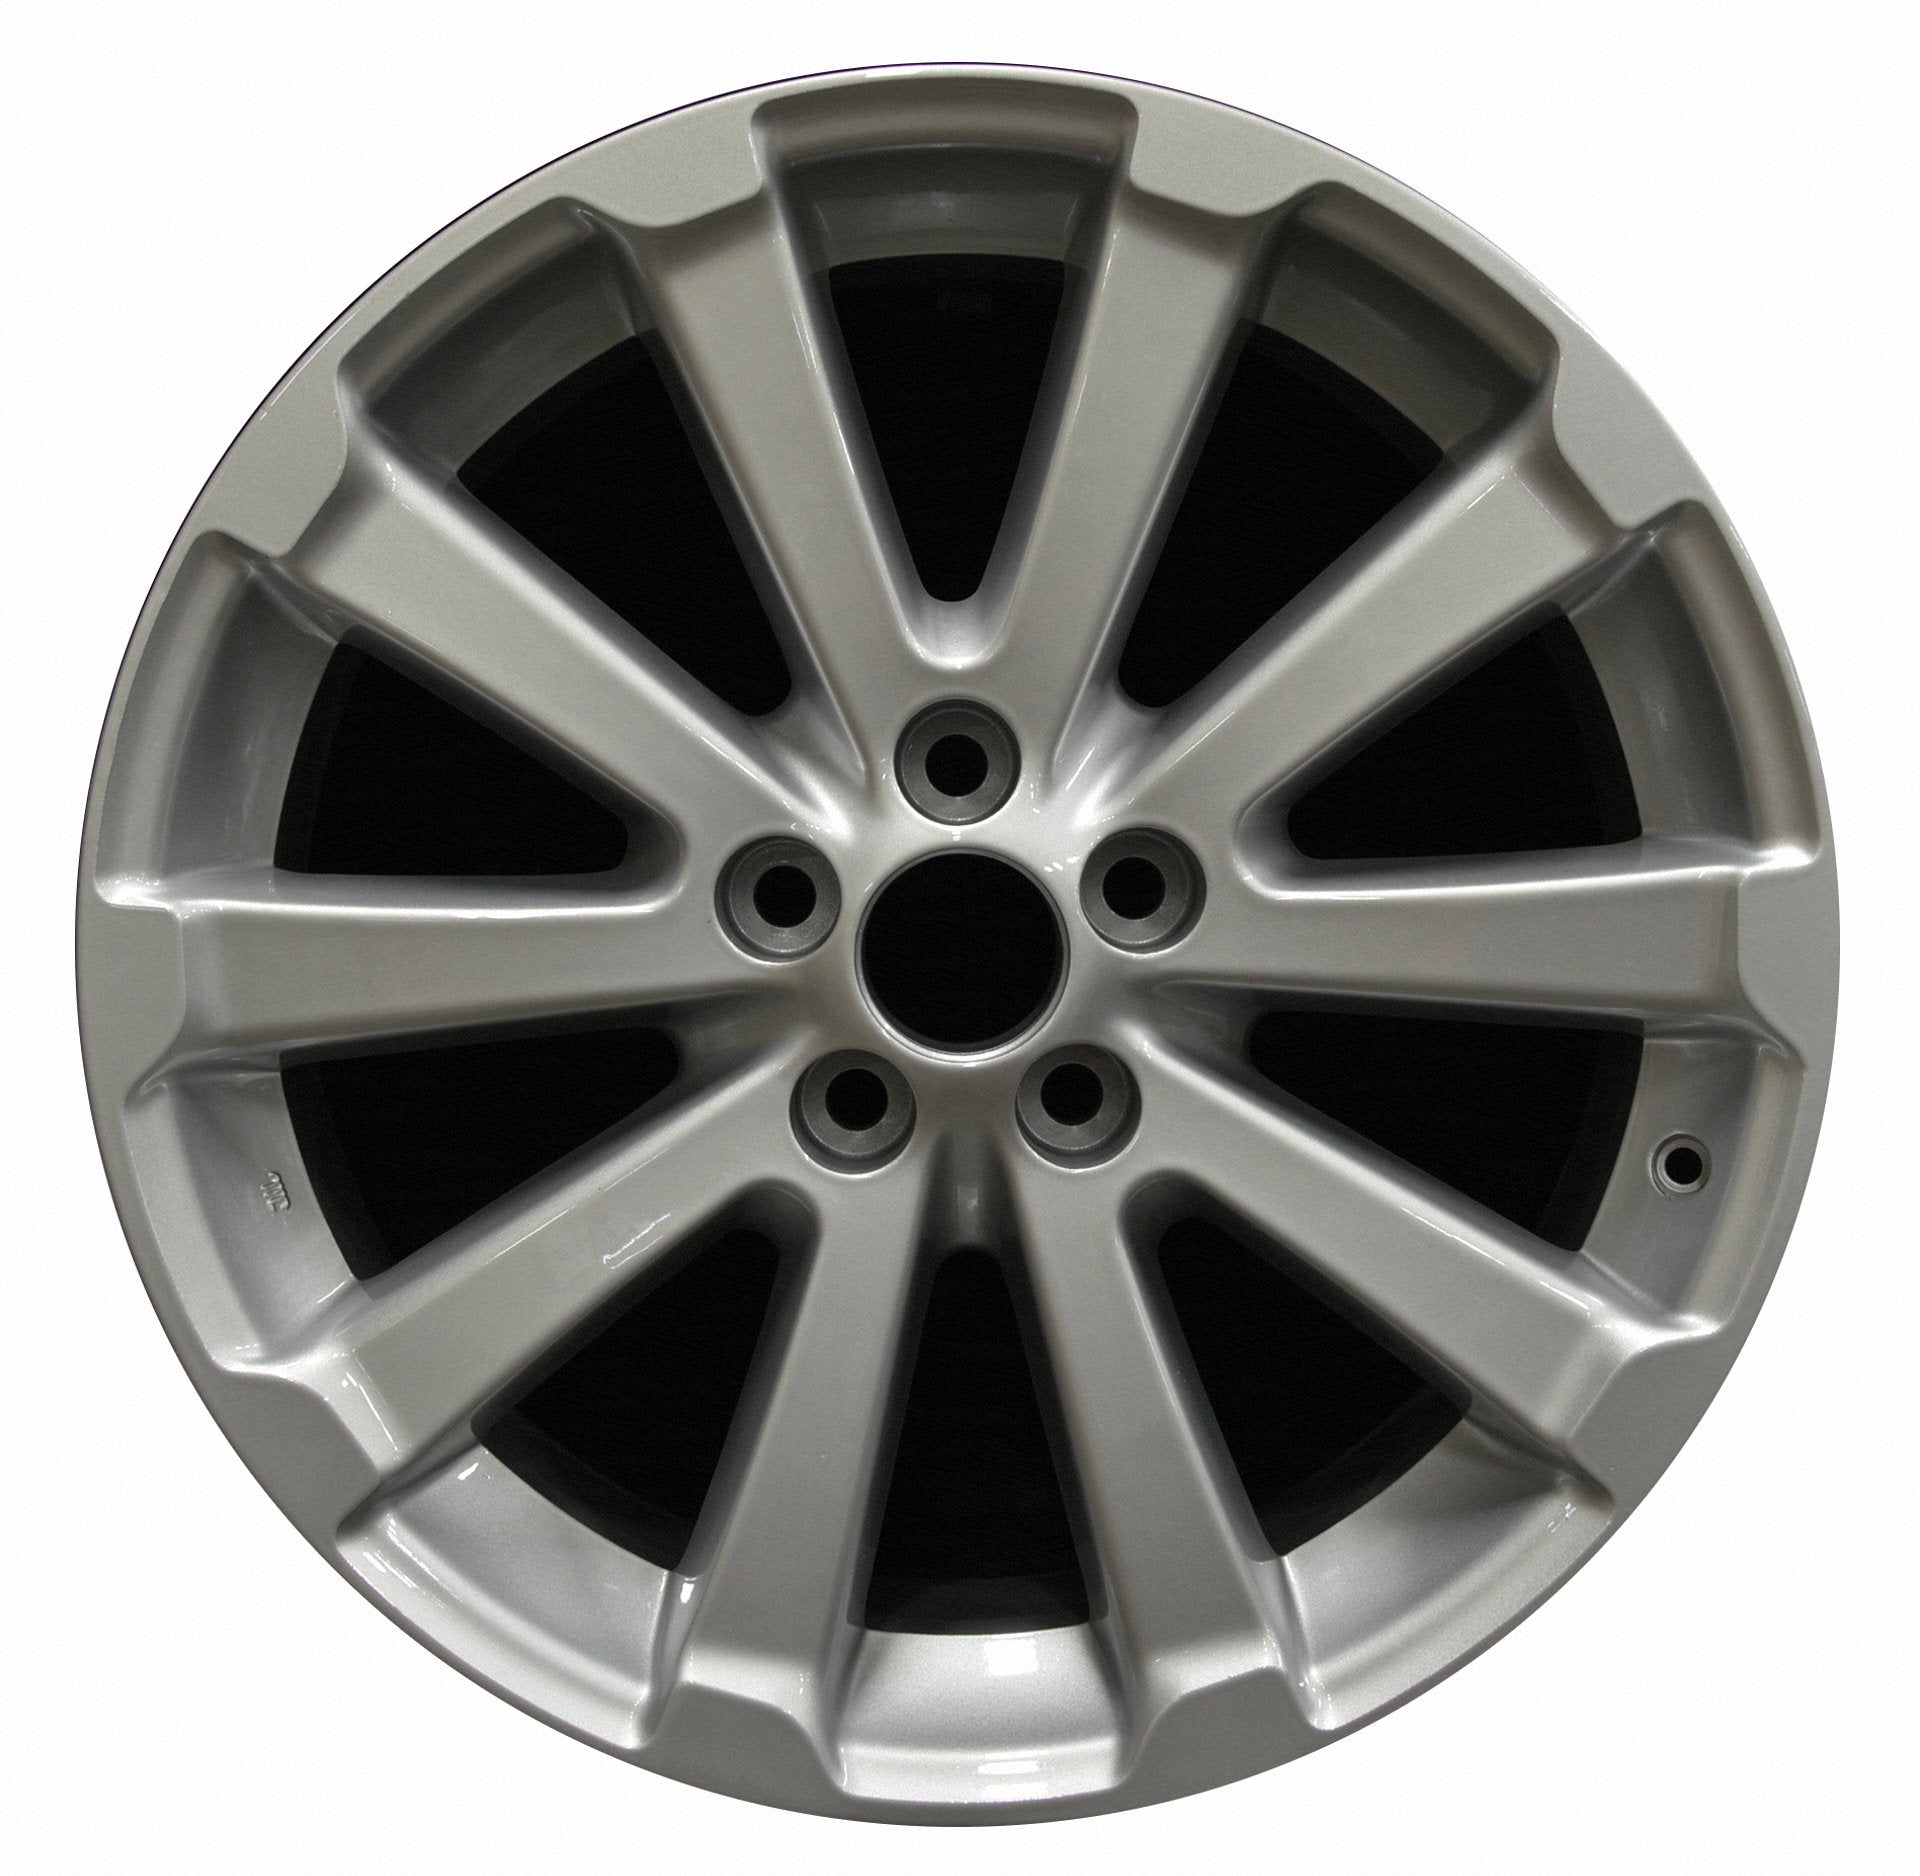 大特価!!】 20 Factory Wheel Replacement New 20x7.5 inch 20x7.5 Inch Premium  Aluminum Alloy Wheel Rim for Toyota Venza 2009-2015 Year Models  ALY69558U78N Direct localhost